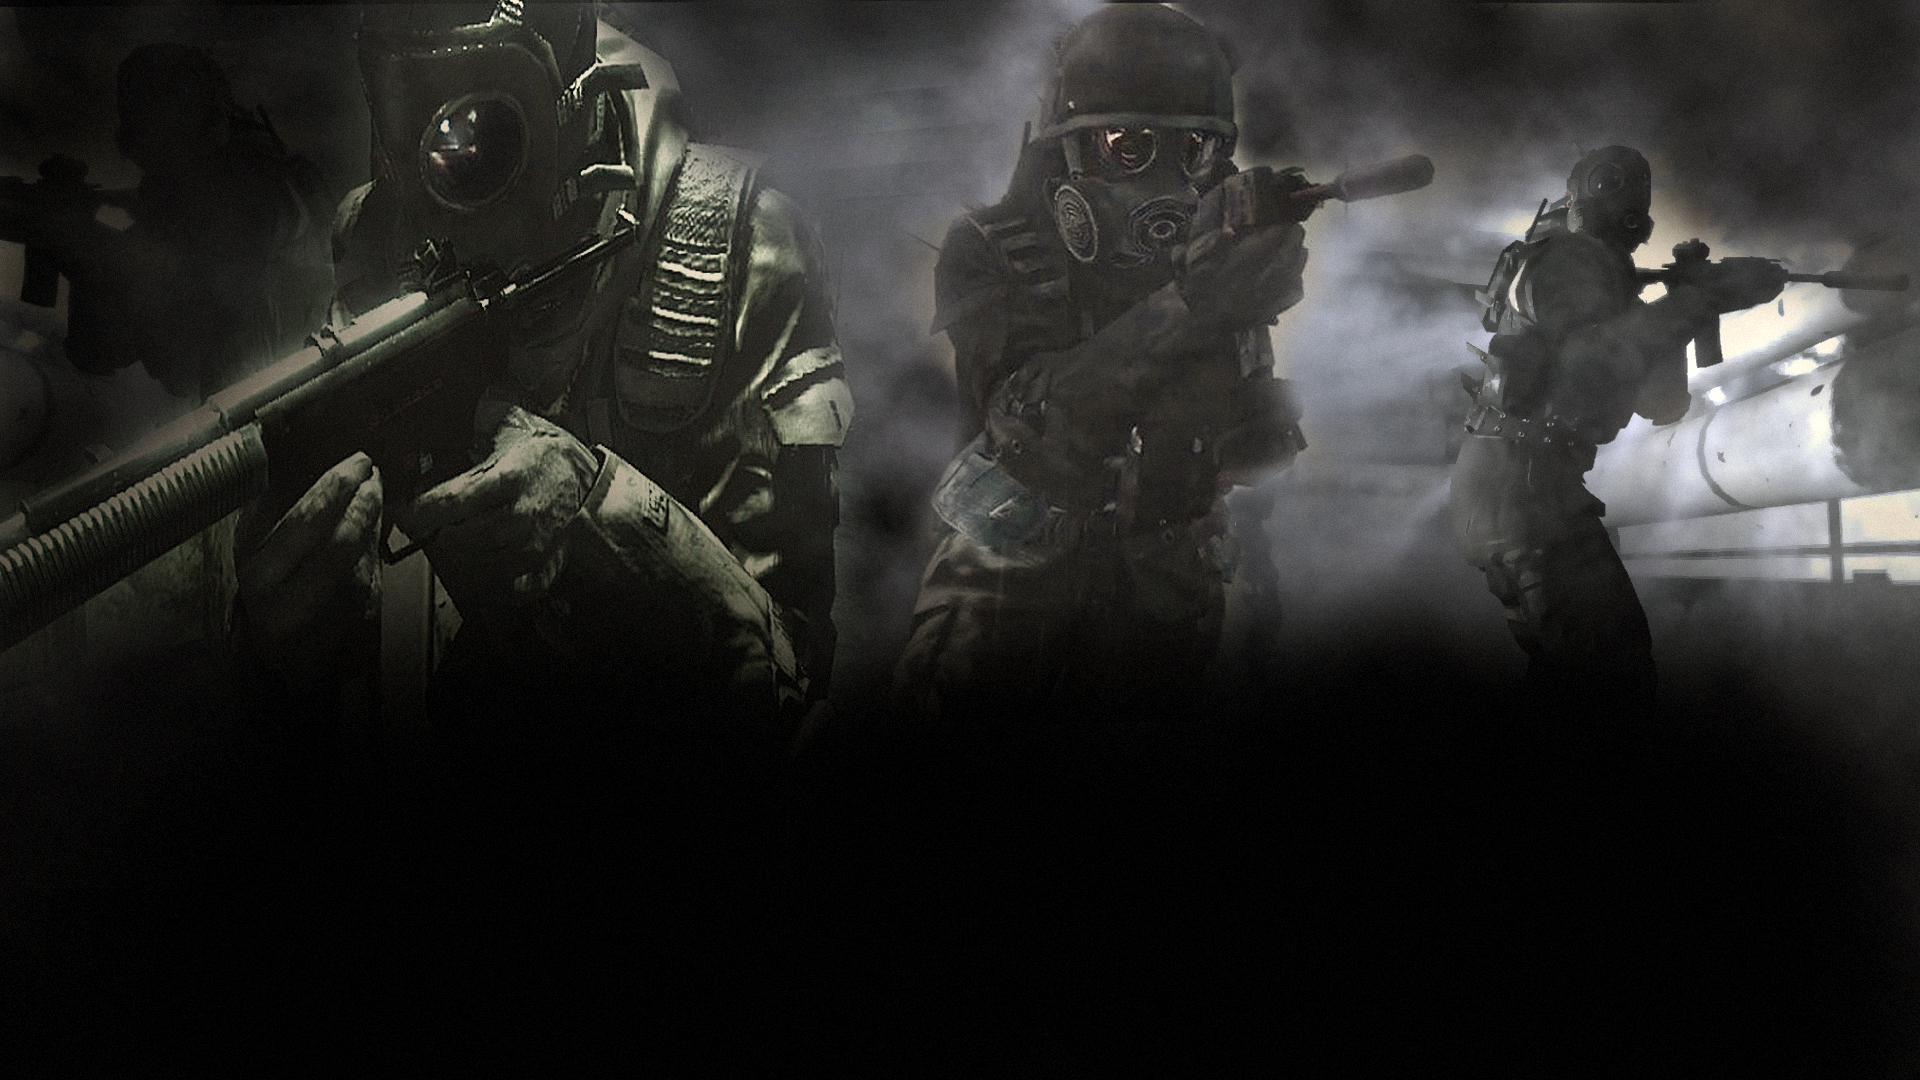 Los mejores fondos de pantalla de Call Of Duty 4: Modern Warfare para la pantalla del teléfono